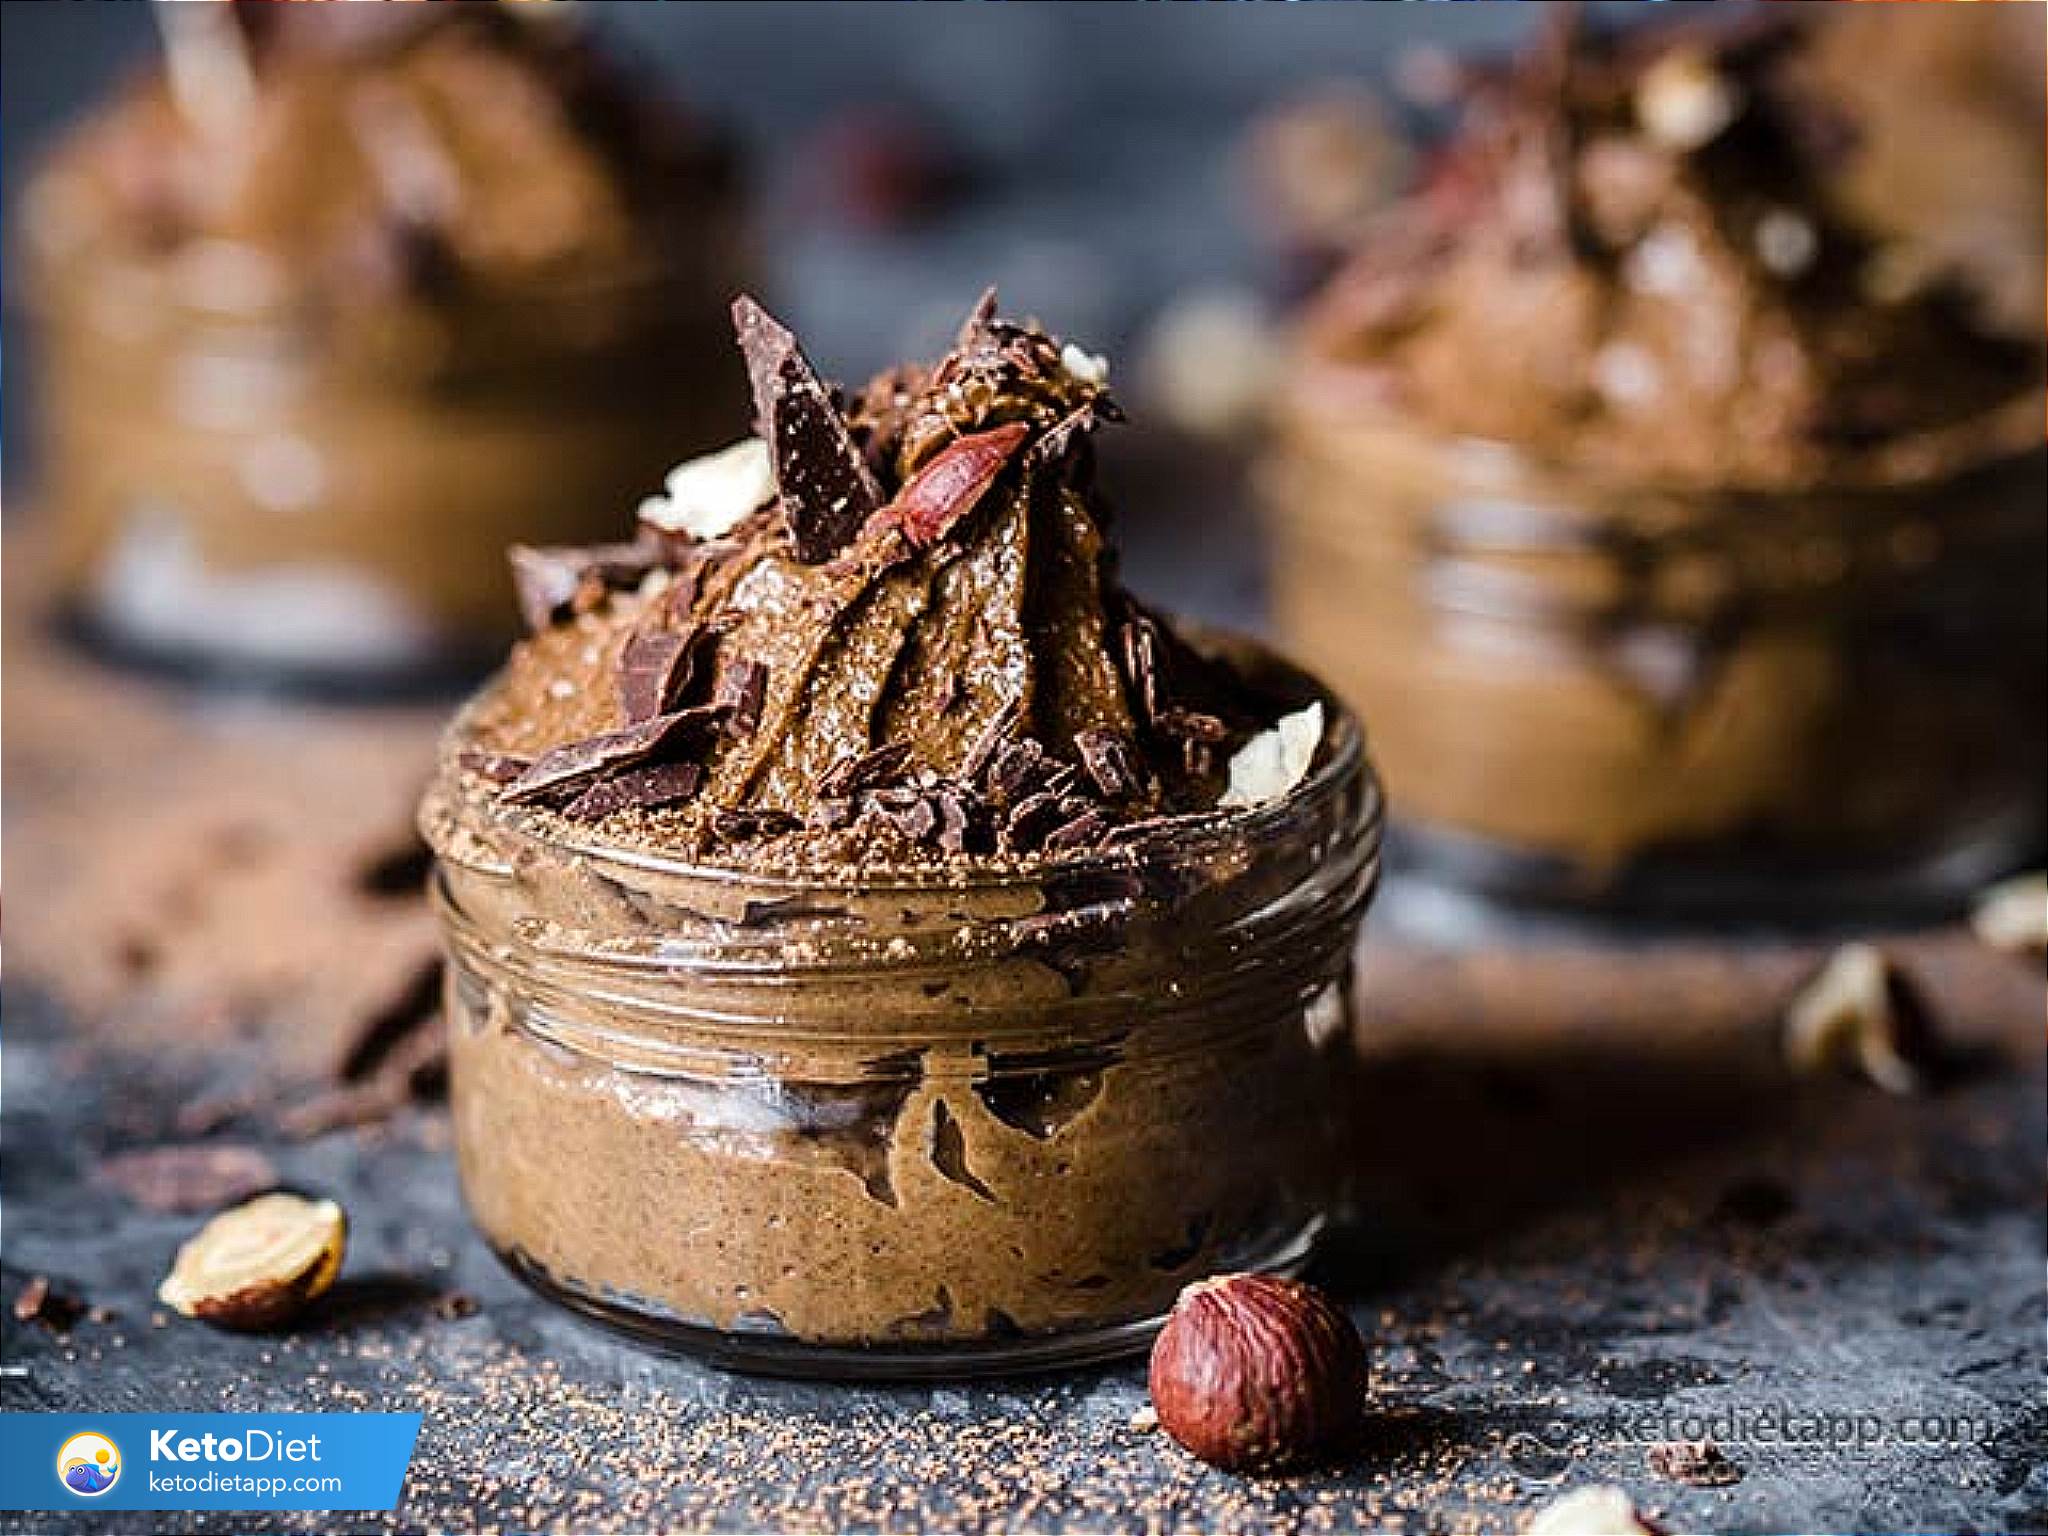 Low-Carb Chocolate Hazelnut Avocado Mousse | KetoDiet Blog